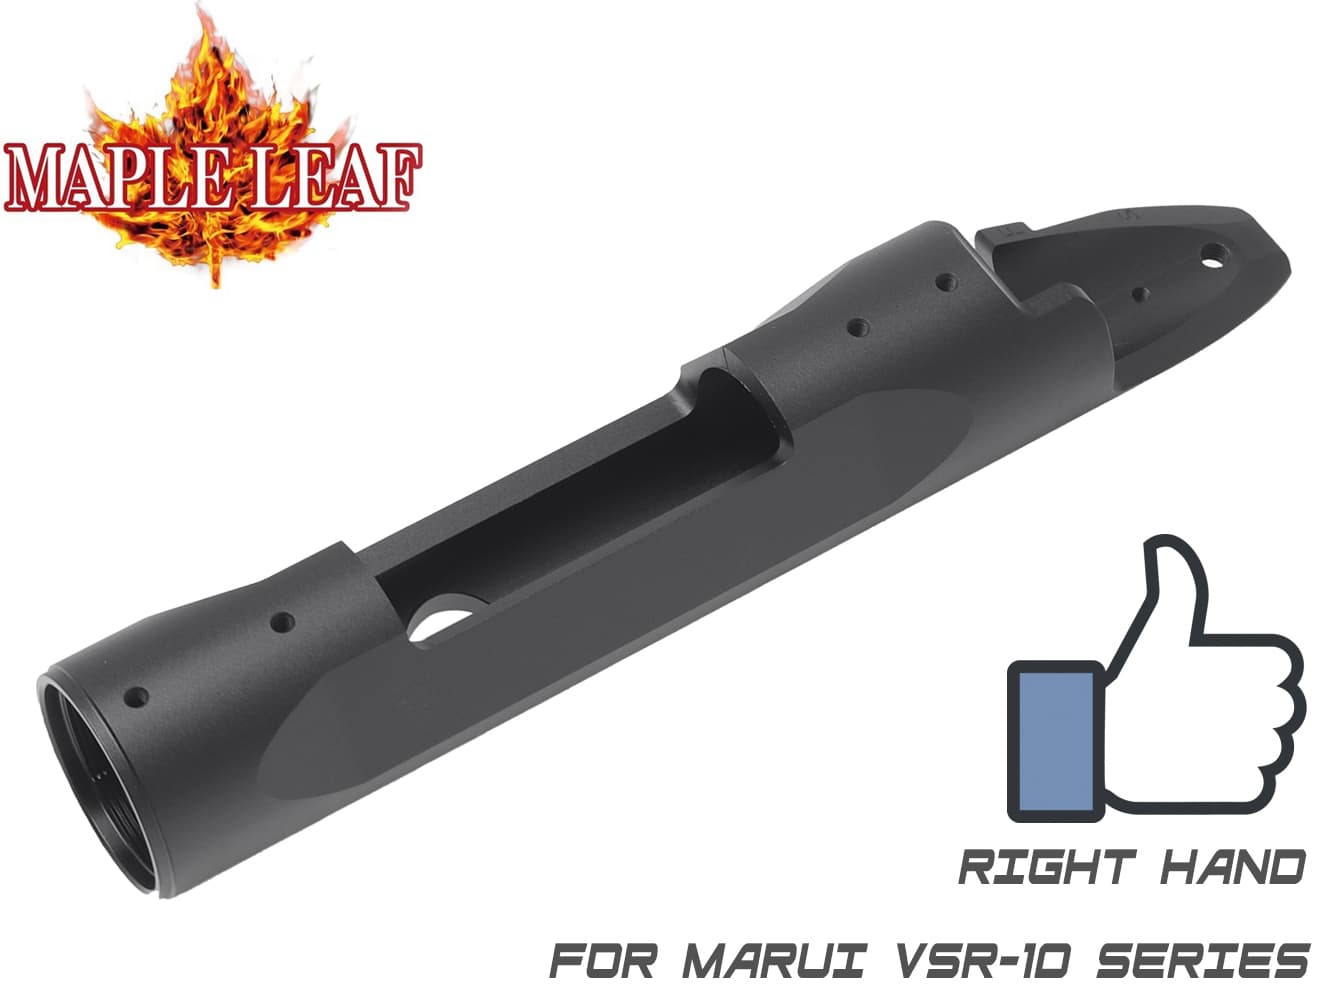 Maple Leaf フルCNC レシーバー for VSR-10 Type B 高精度 高強度アルミ削り出し メタルレシーバー 強度アップ 東京マルイ VSR10対応 レシーバーリング付き